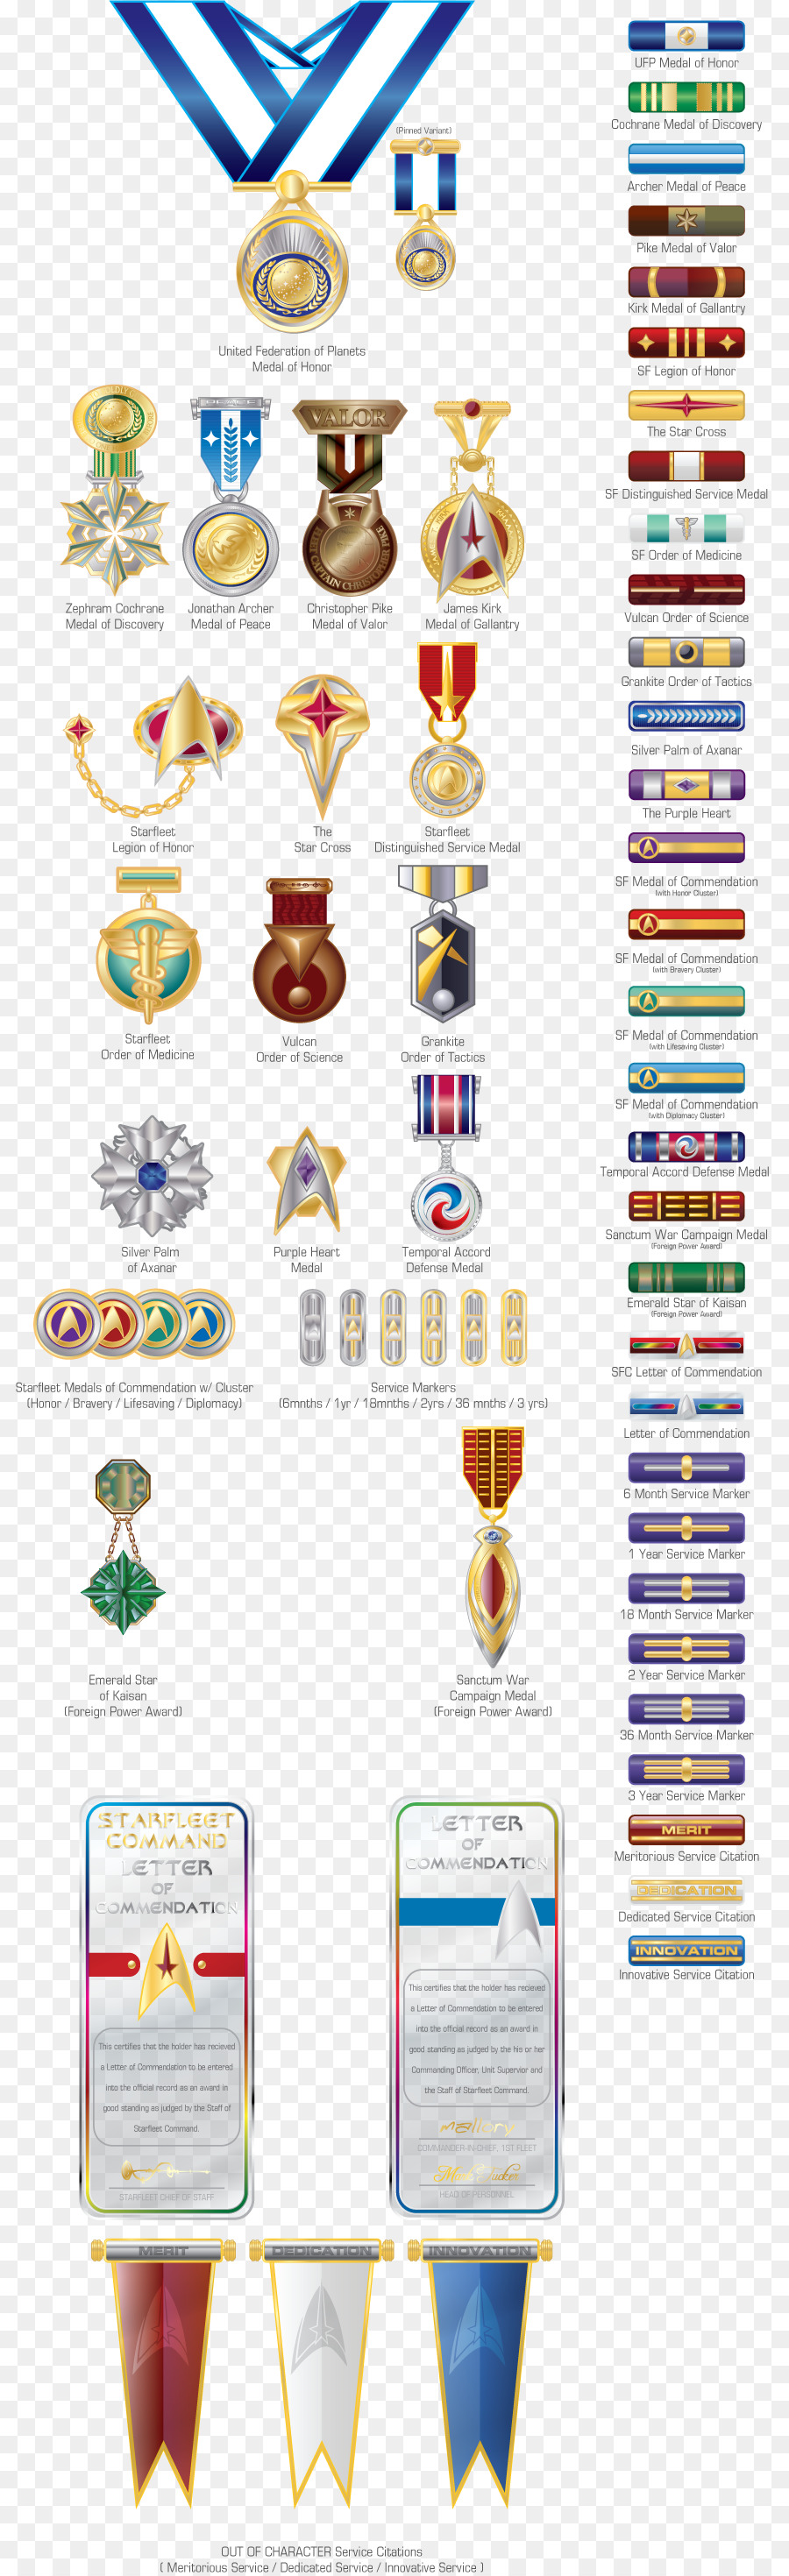 Medaglia Militare premi e riconoscimenti della flotta stellare Carta - onore elenco